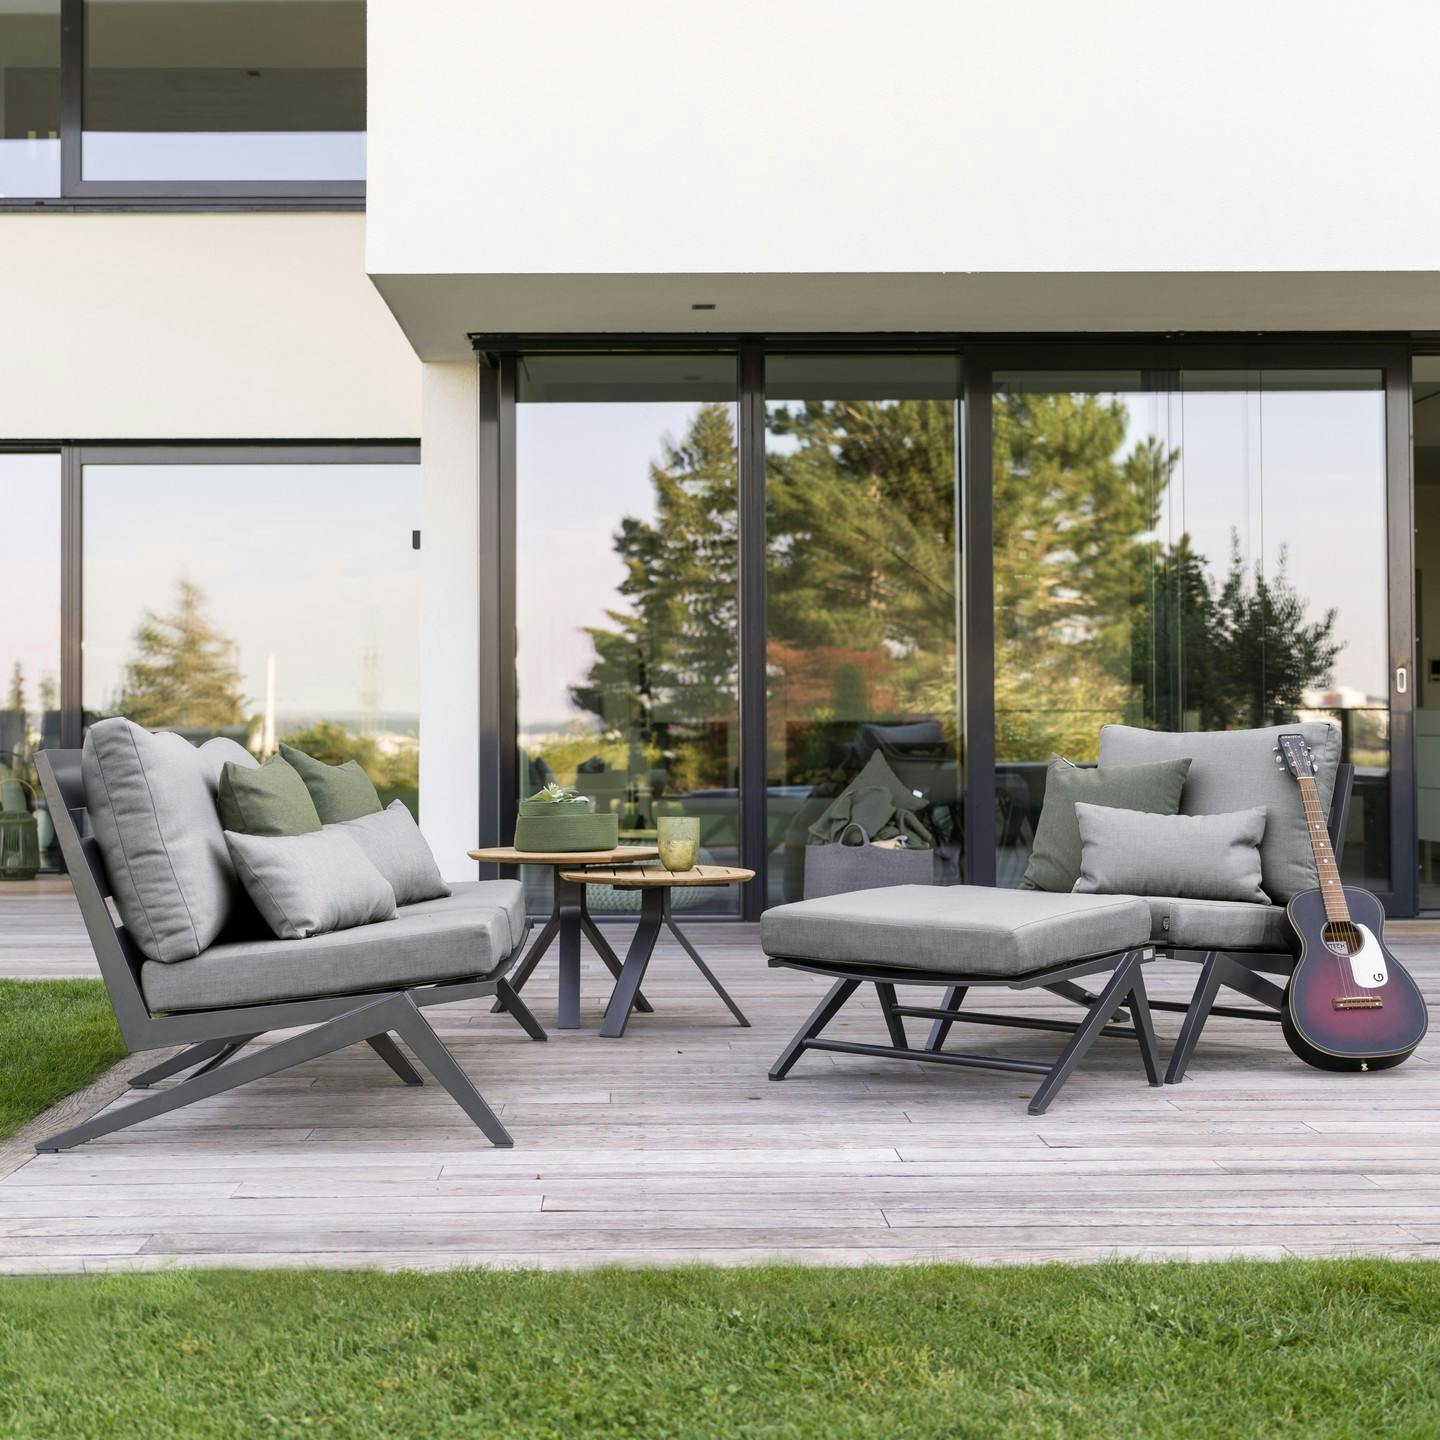 Stern Outdoor-Möbel: Qualität für draußen